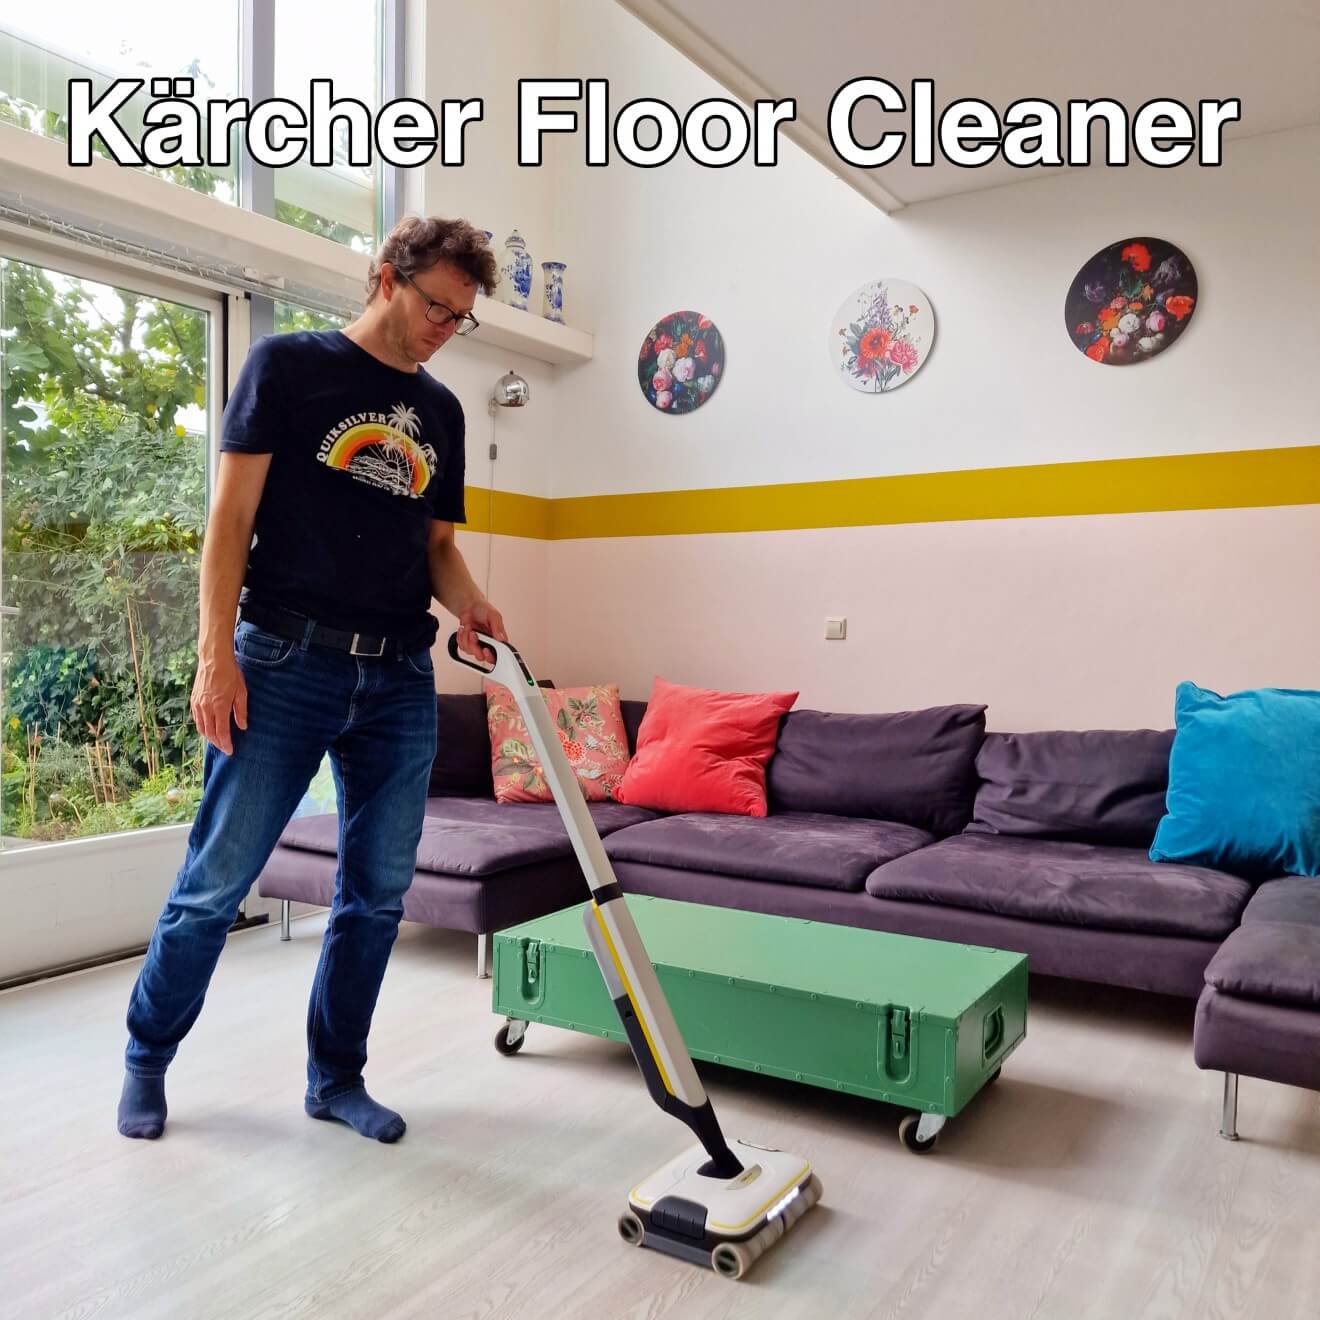 Kärcher Floor Cleaner: je vloer schoonmaken met één apparaat. Wat wordt de vloer in ons gezin snel vies sinds we kinderen hebben! Dan is het super handig als je de vloer kunt schoonmaken met één apparaat. De Kärcher Floor Cleaner FC 7 Cordless kan stofzuigen en dweilen. Tijd voor een review van deze Kärcher vloerreiniger!